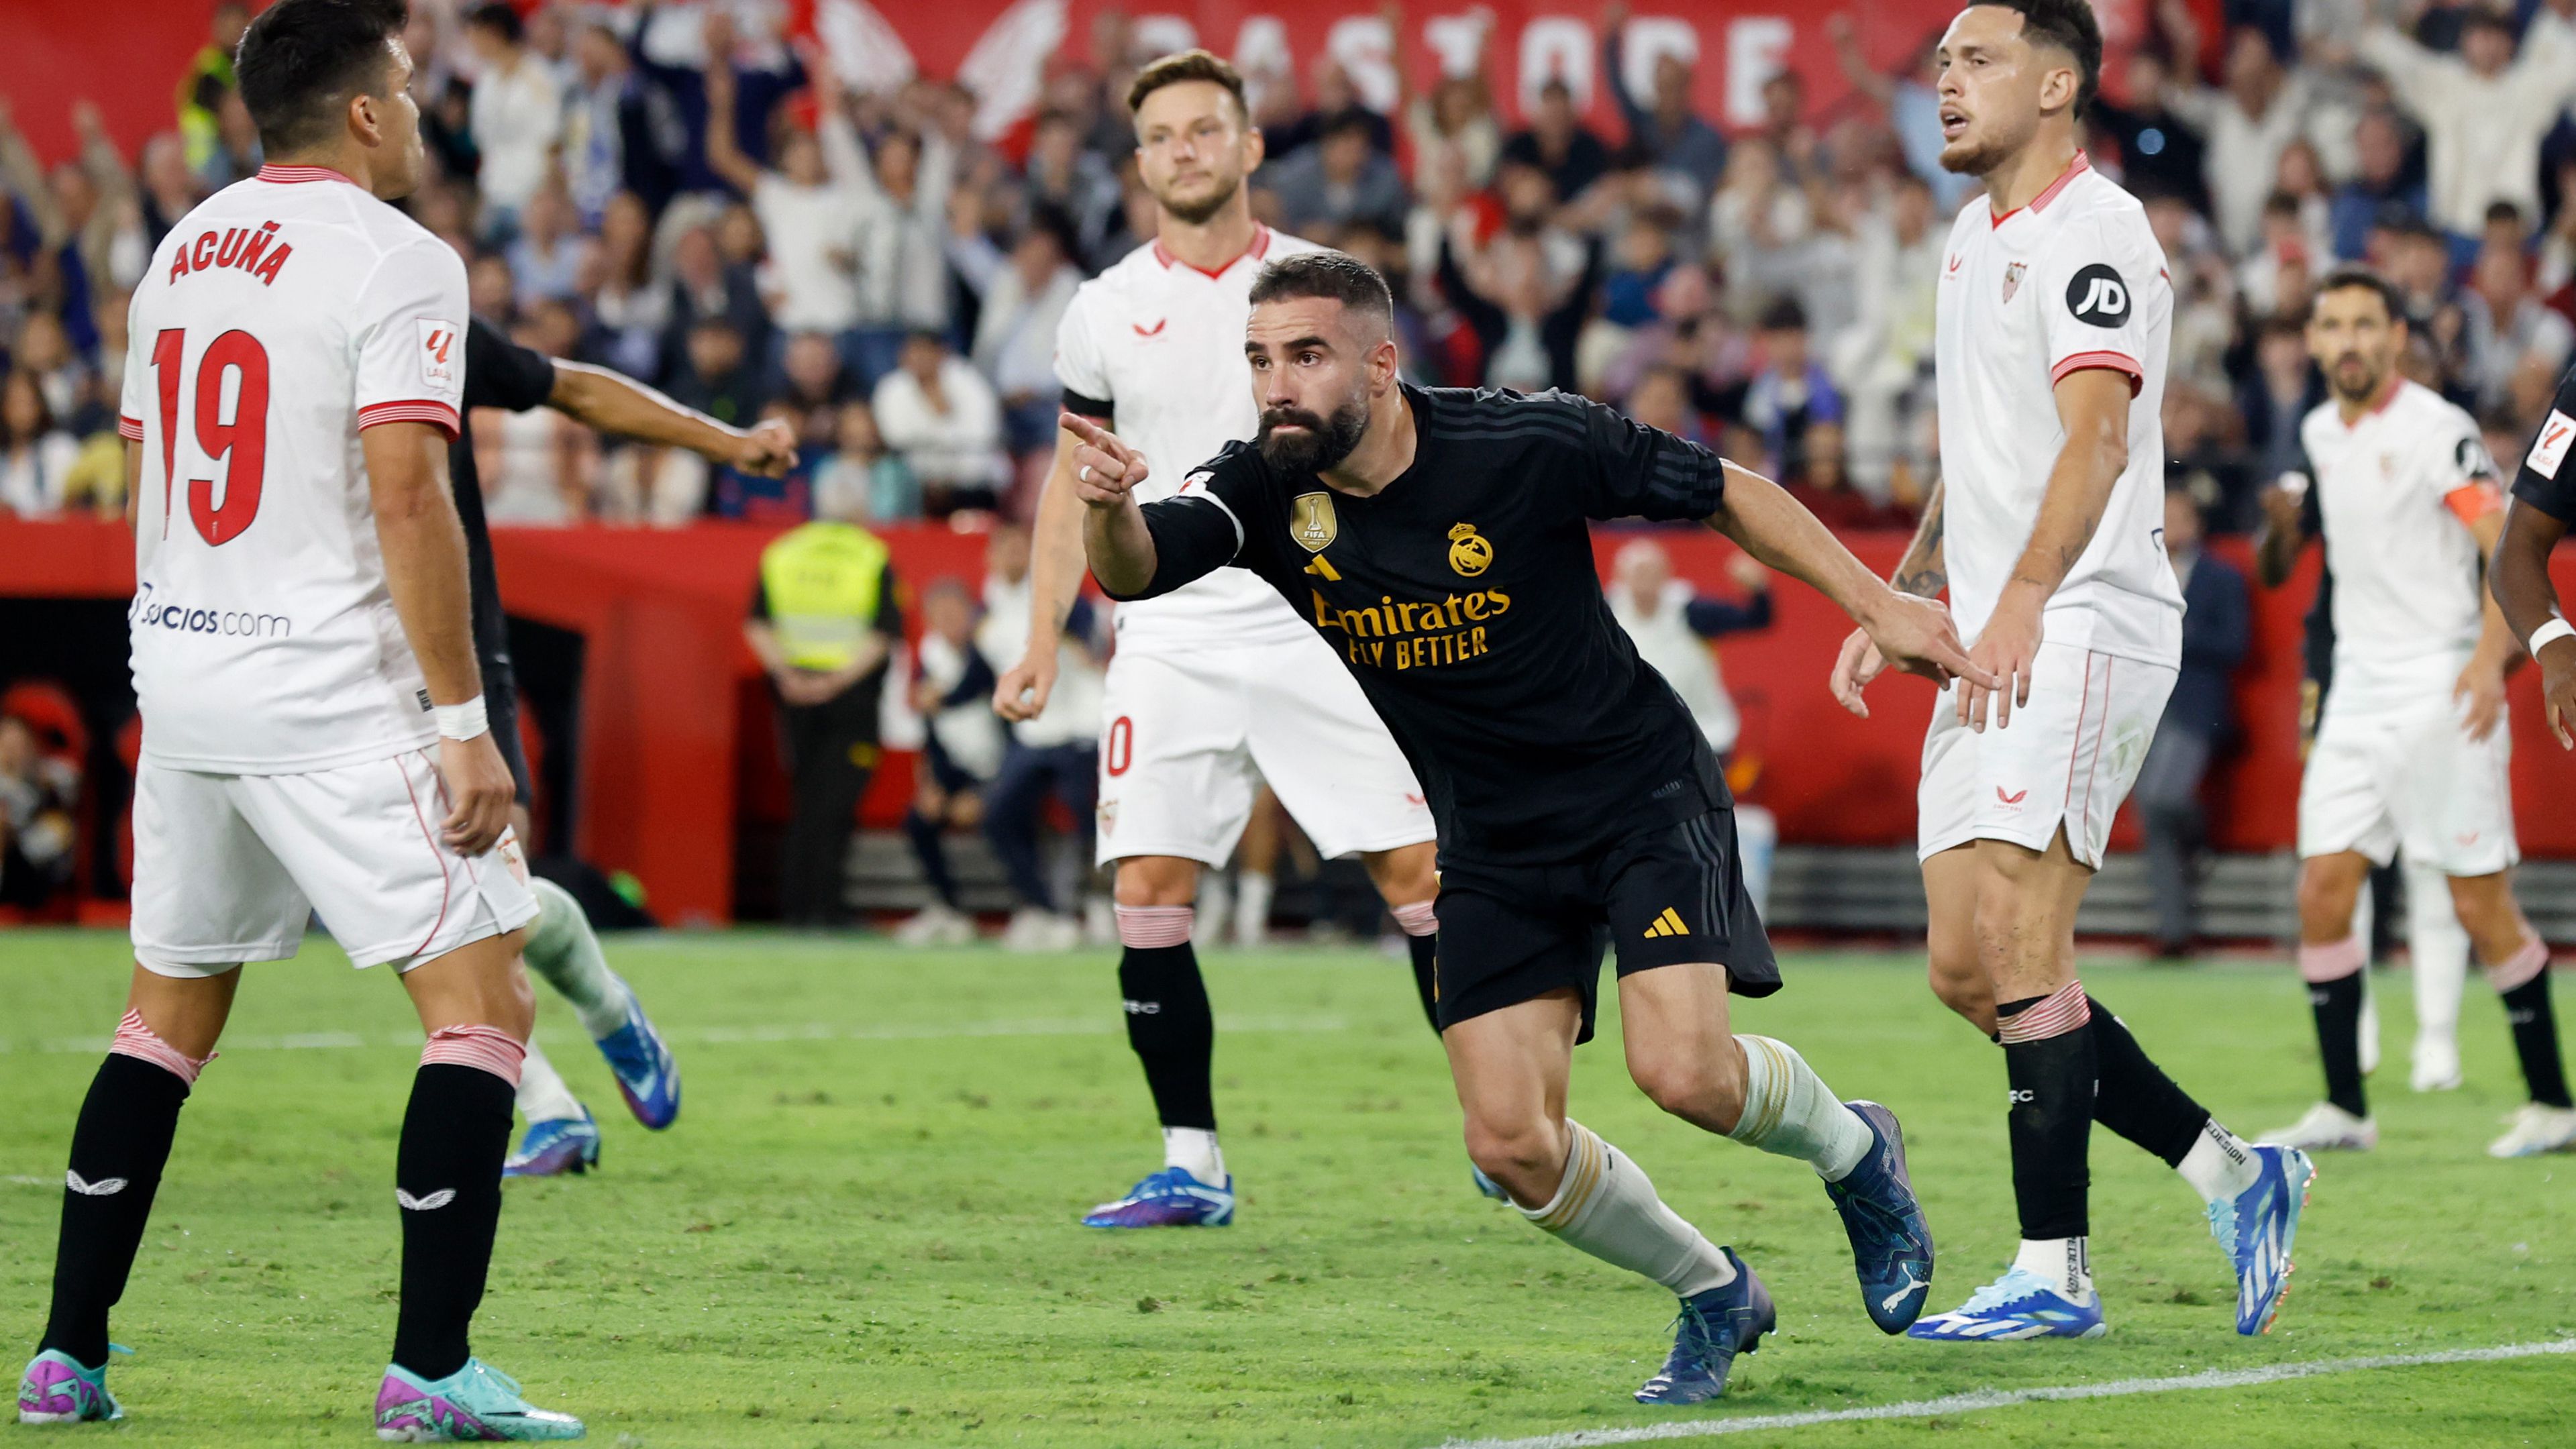 Dani Carvajal fejesével egyenlített a Real Madrid a Sevilla otthonában